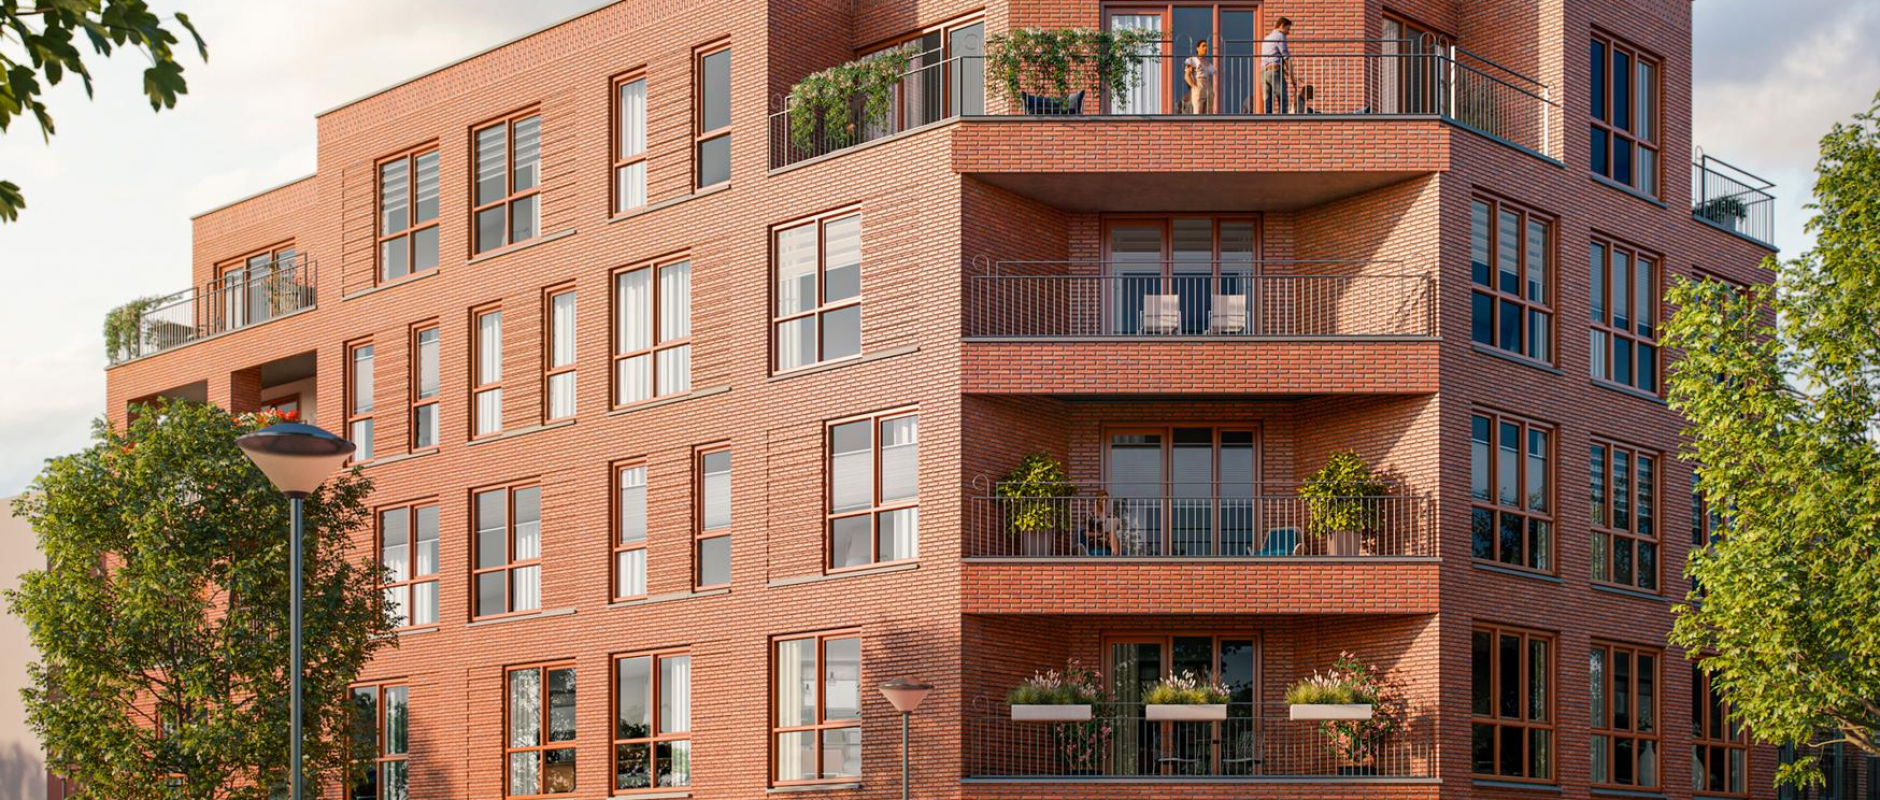 Woning te koop aan de Bataviahaven Stadsfront - Appartementen 0ong te Lelystad